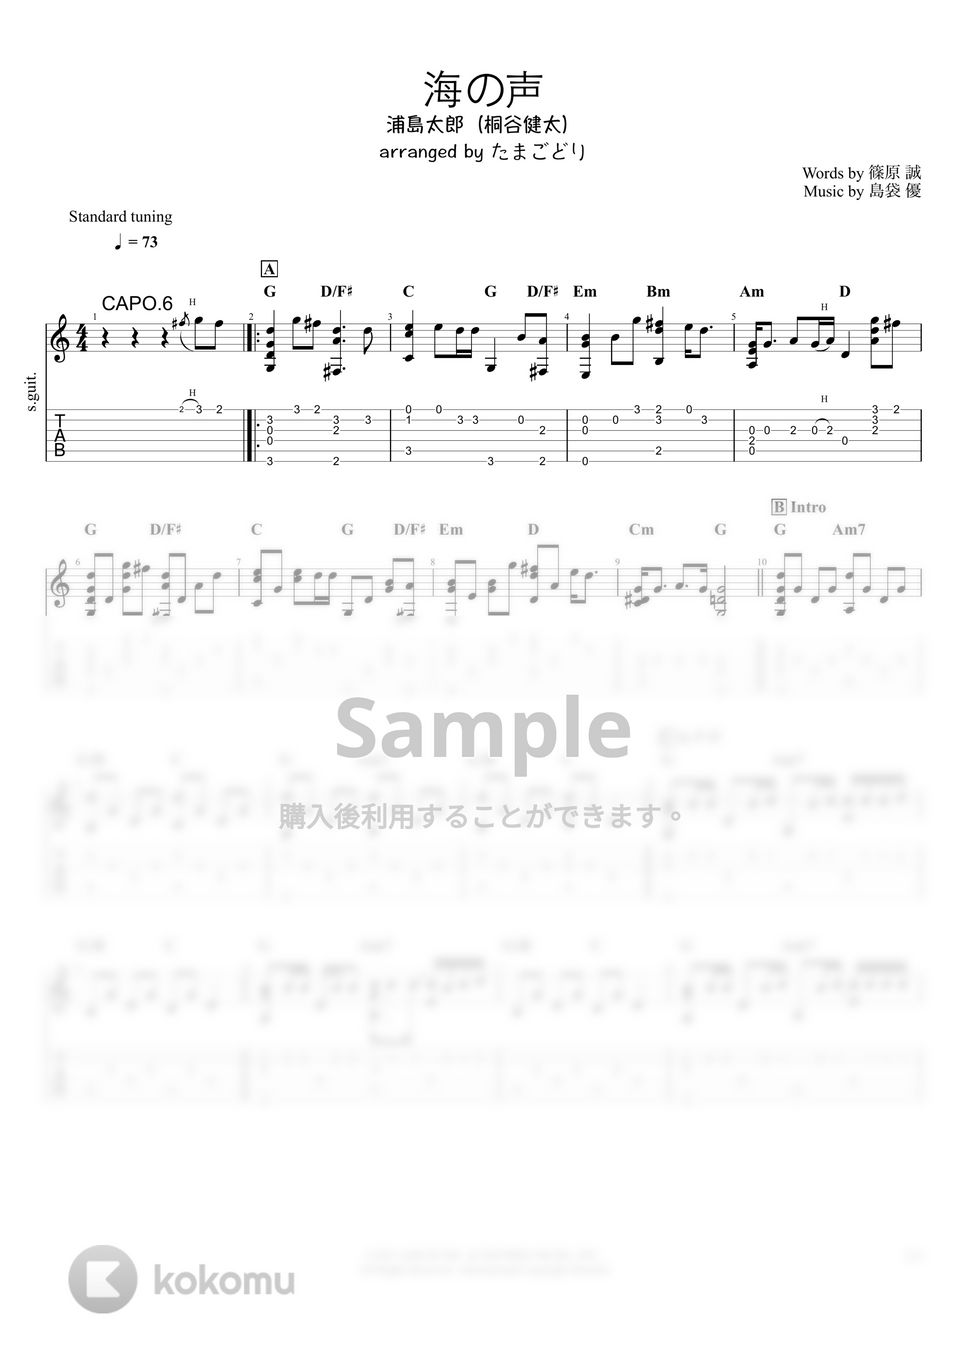 浦島太郎(桐谷健太) - 海の声 (ソロギター) by たまごどり